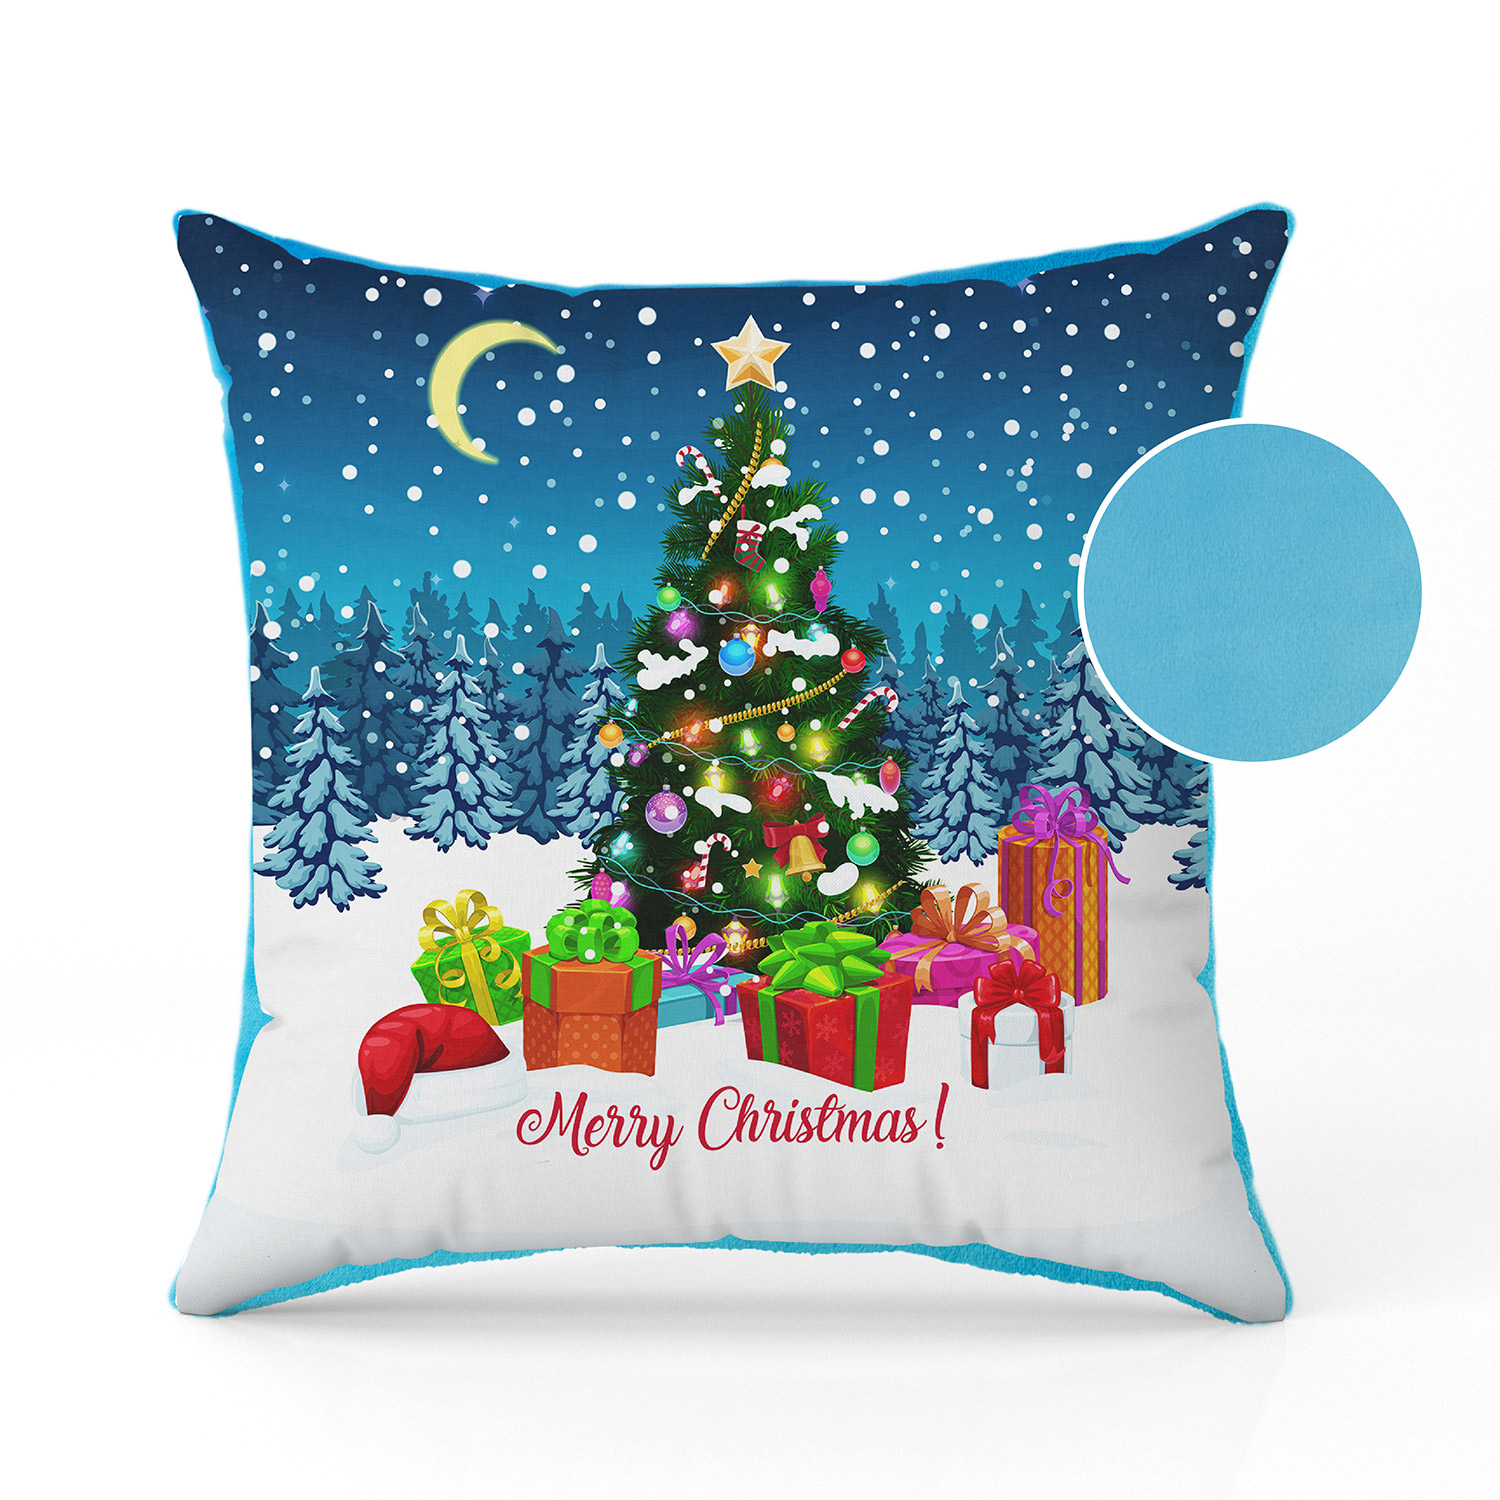 Christmas pillow with Christmas tree